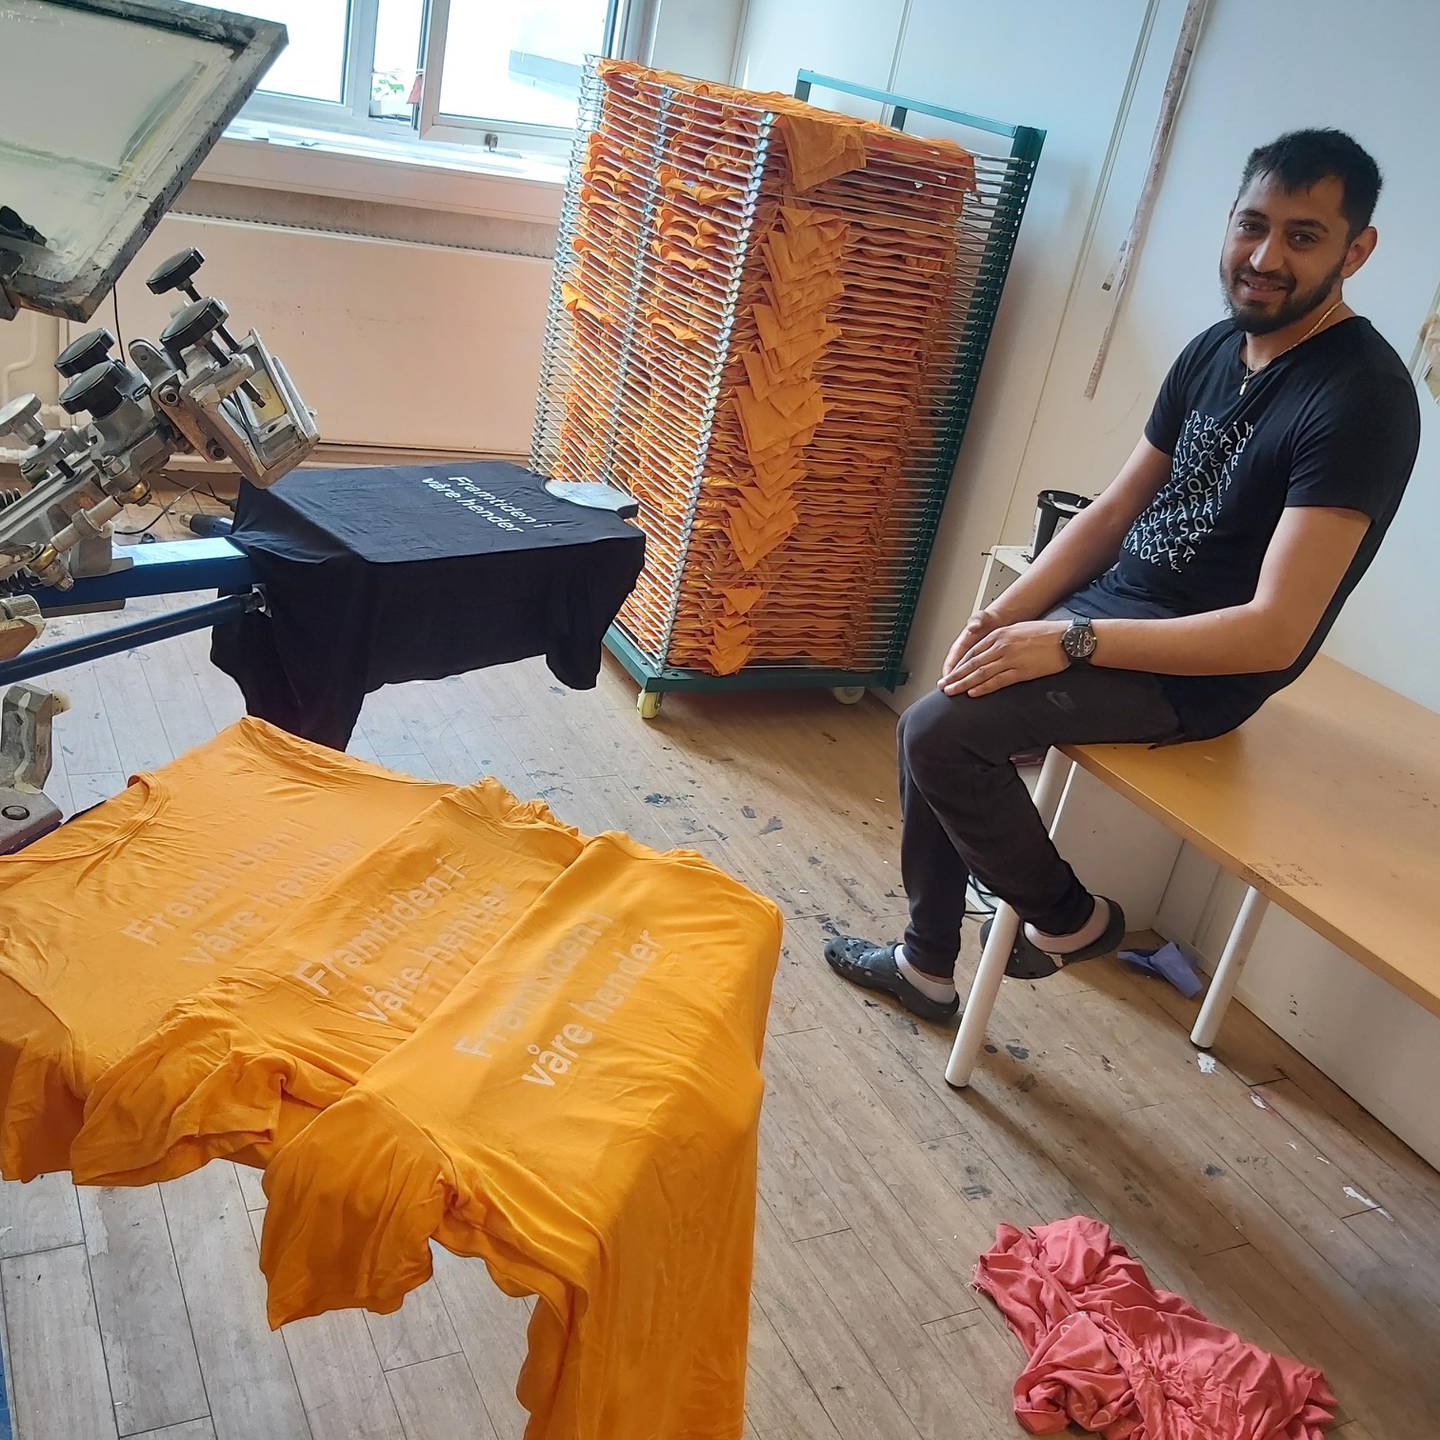 Guta Trandafir er romsk og har jobbet på tekstiltrykkeriet i Oslo i tre år, nå flytter han og trykkeri-virksomheten til Romania.